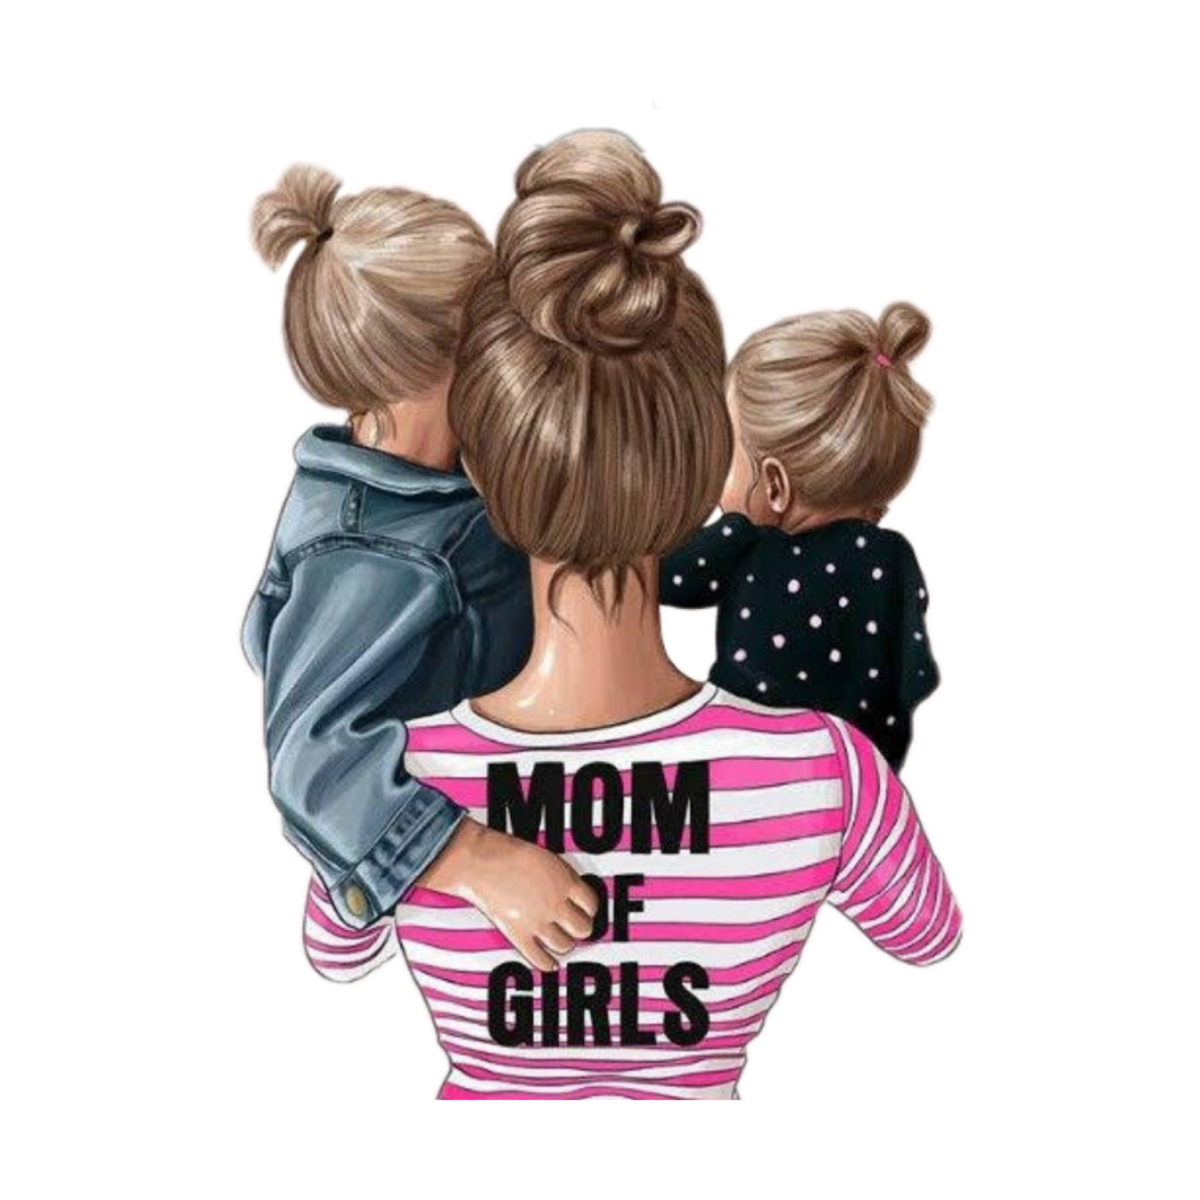 Модные иллюстрации мама и дети. Мама с двумя девочками. Иллюстрация мама с двумя дочками.